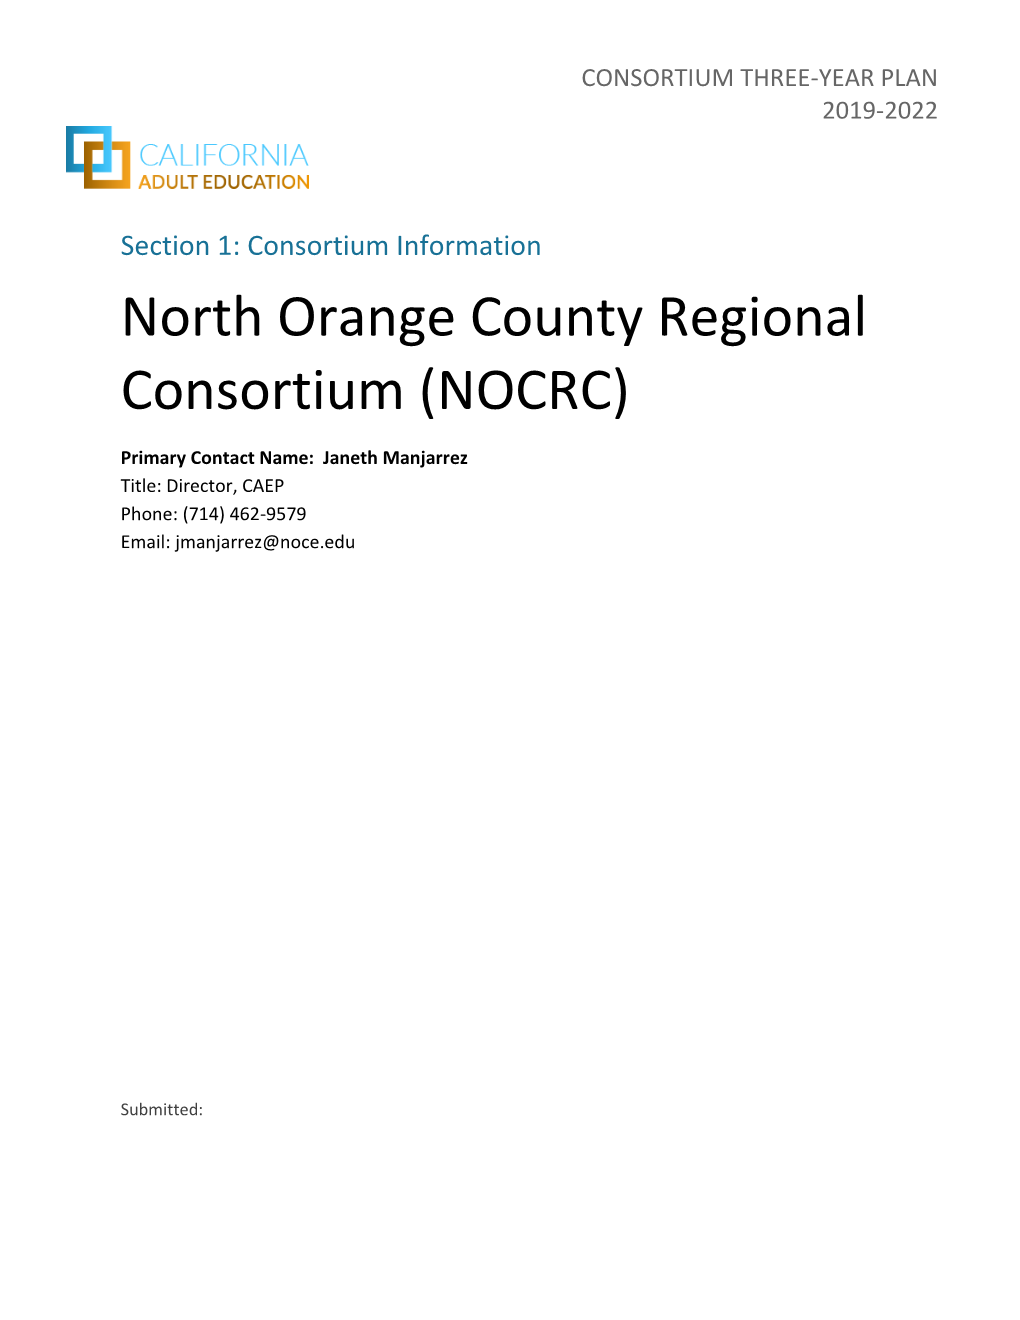 North Orange County Regional Consortium (NOCRC)